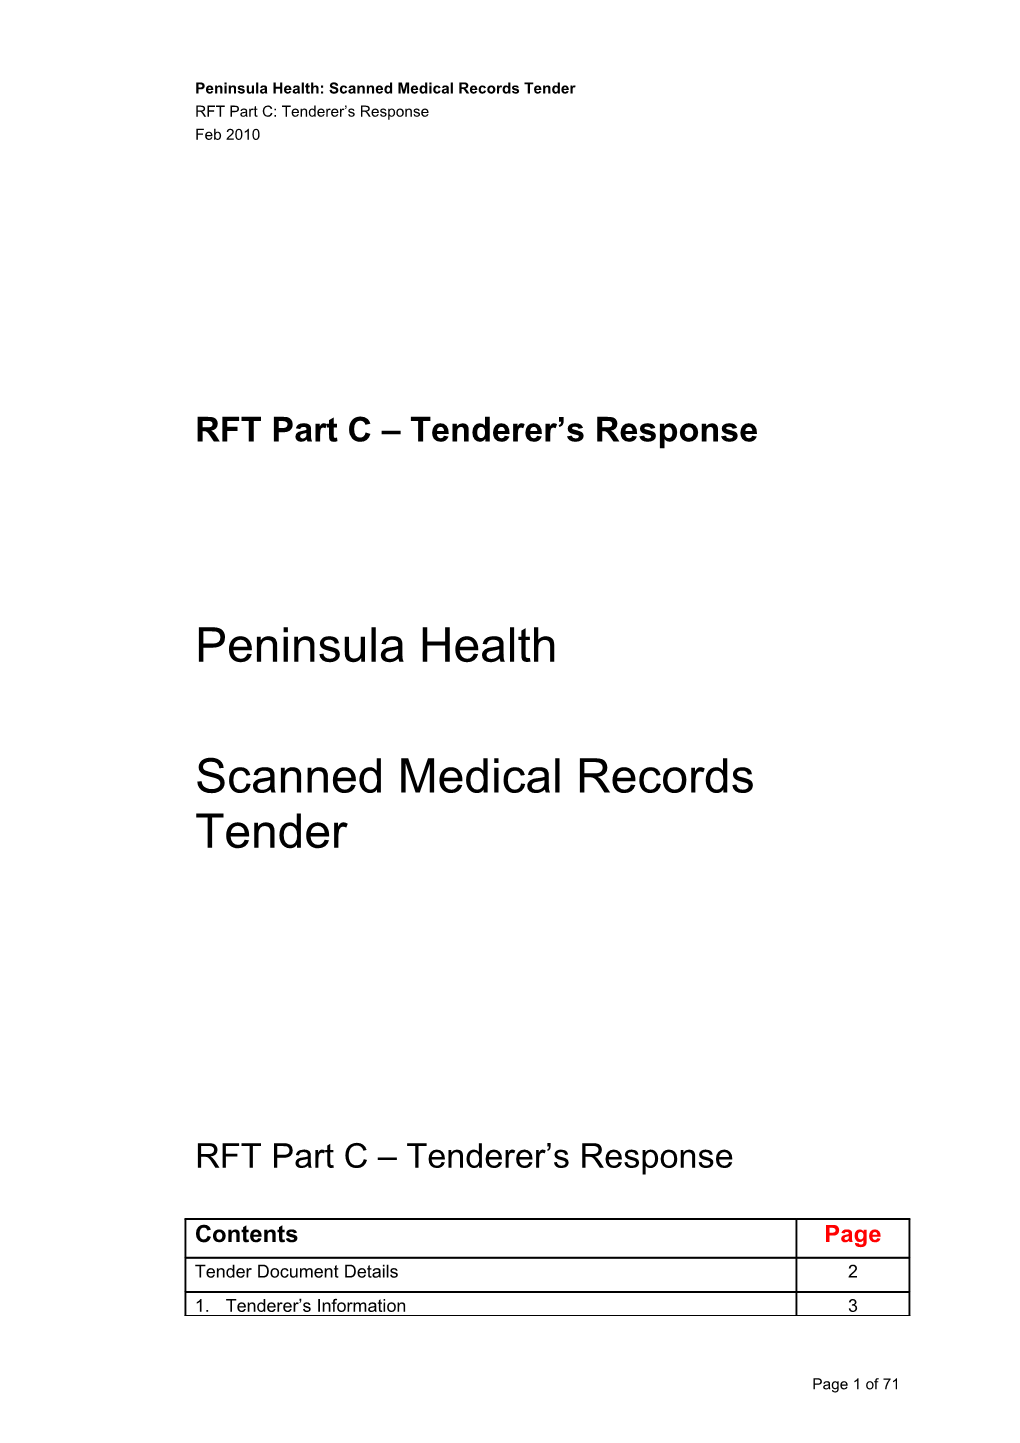 RFT Part D Tenderer S Response